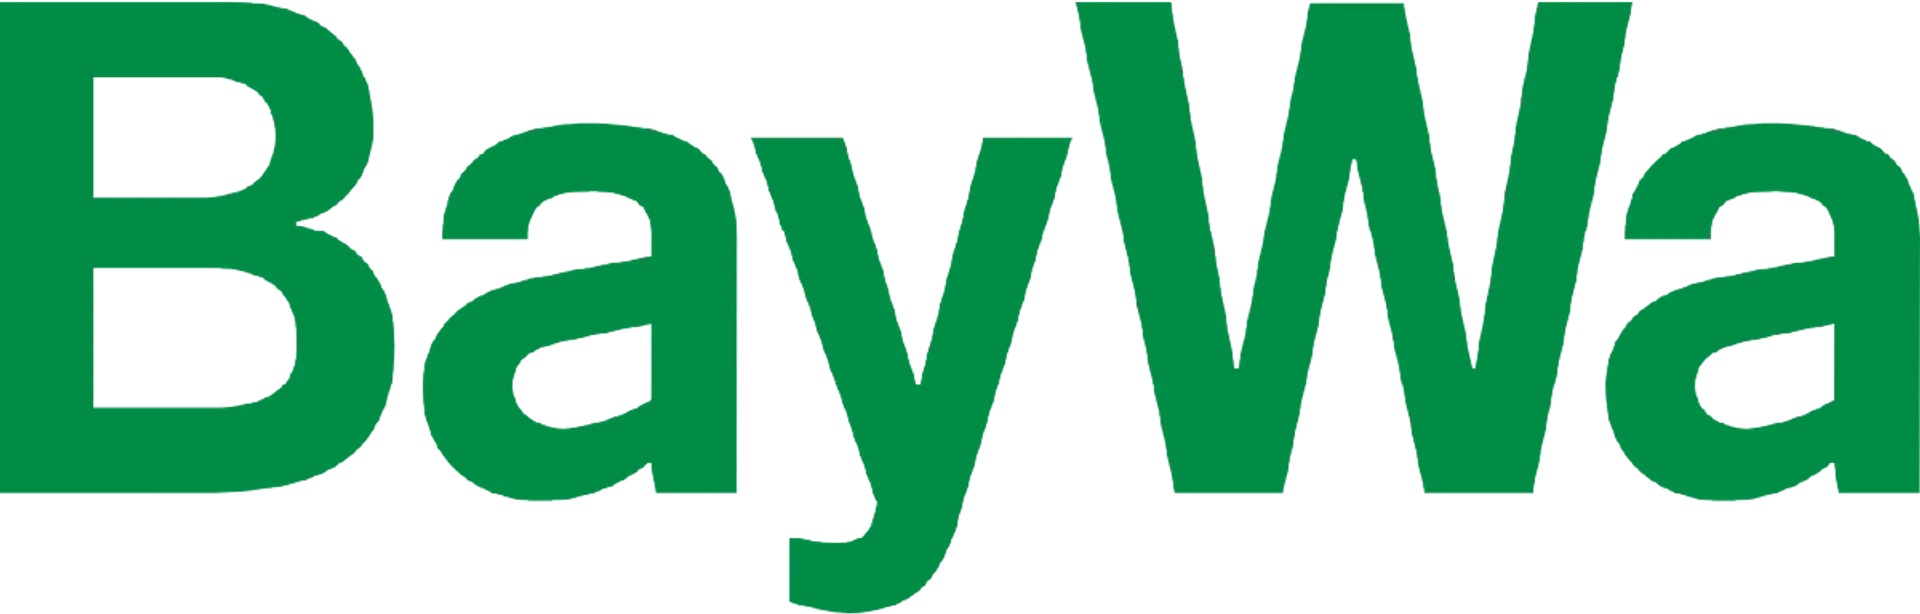 BAYWA logo